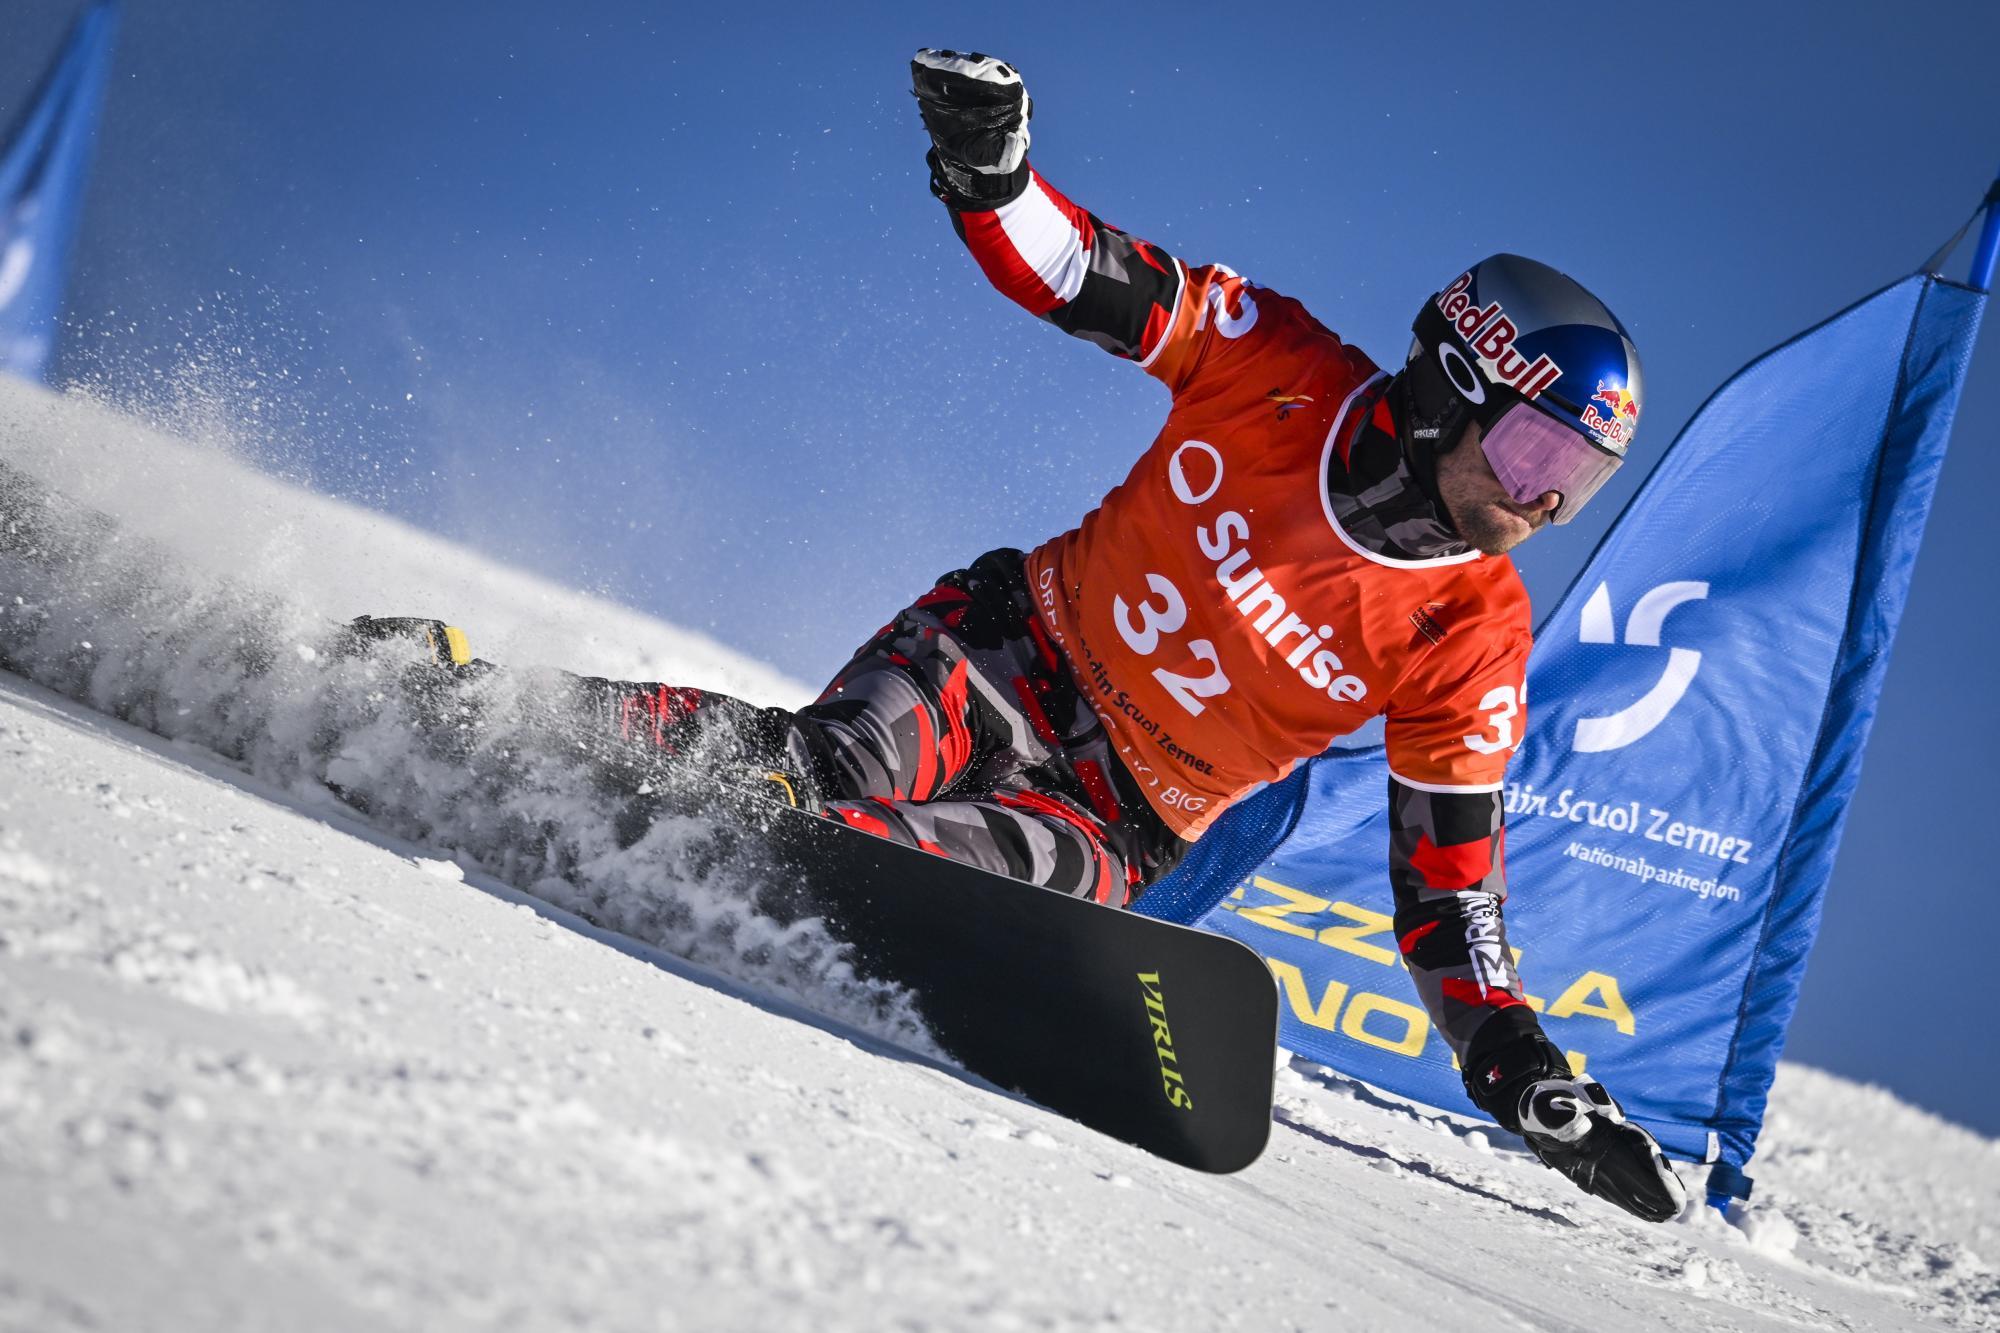 Pünktlich zur WM: Snowboard-Star Karl rast zum ersten Saisonsieg